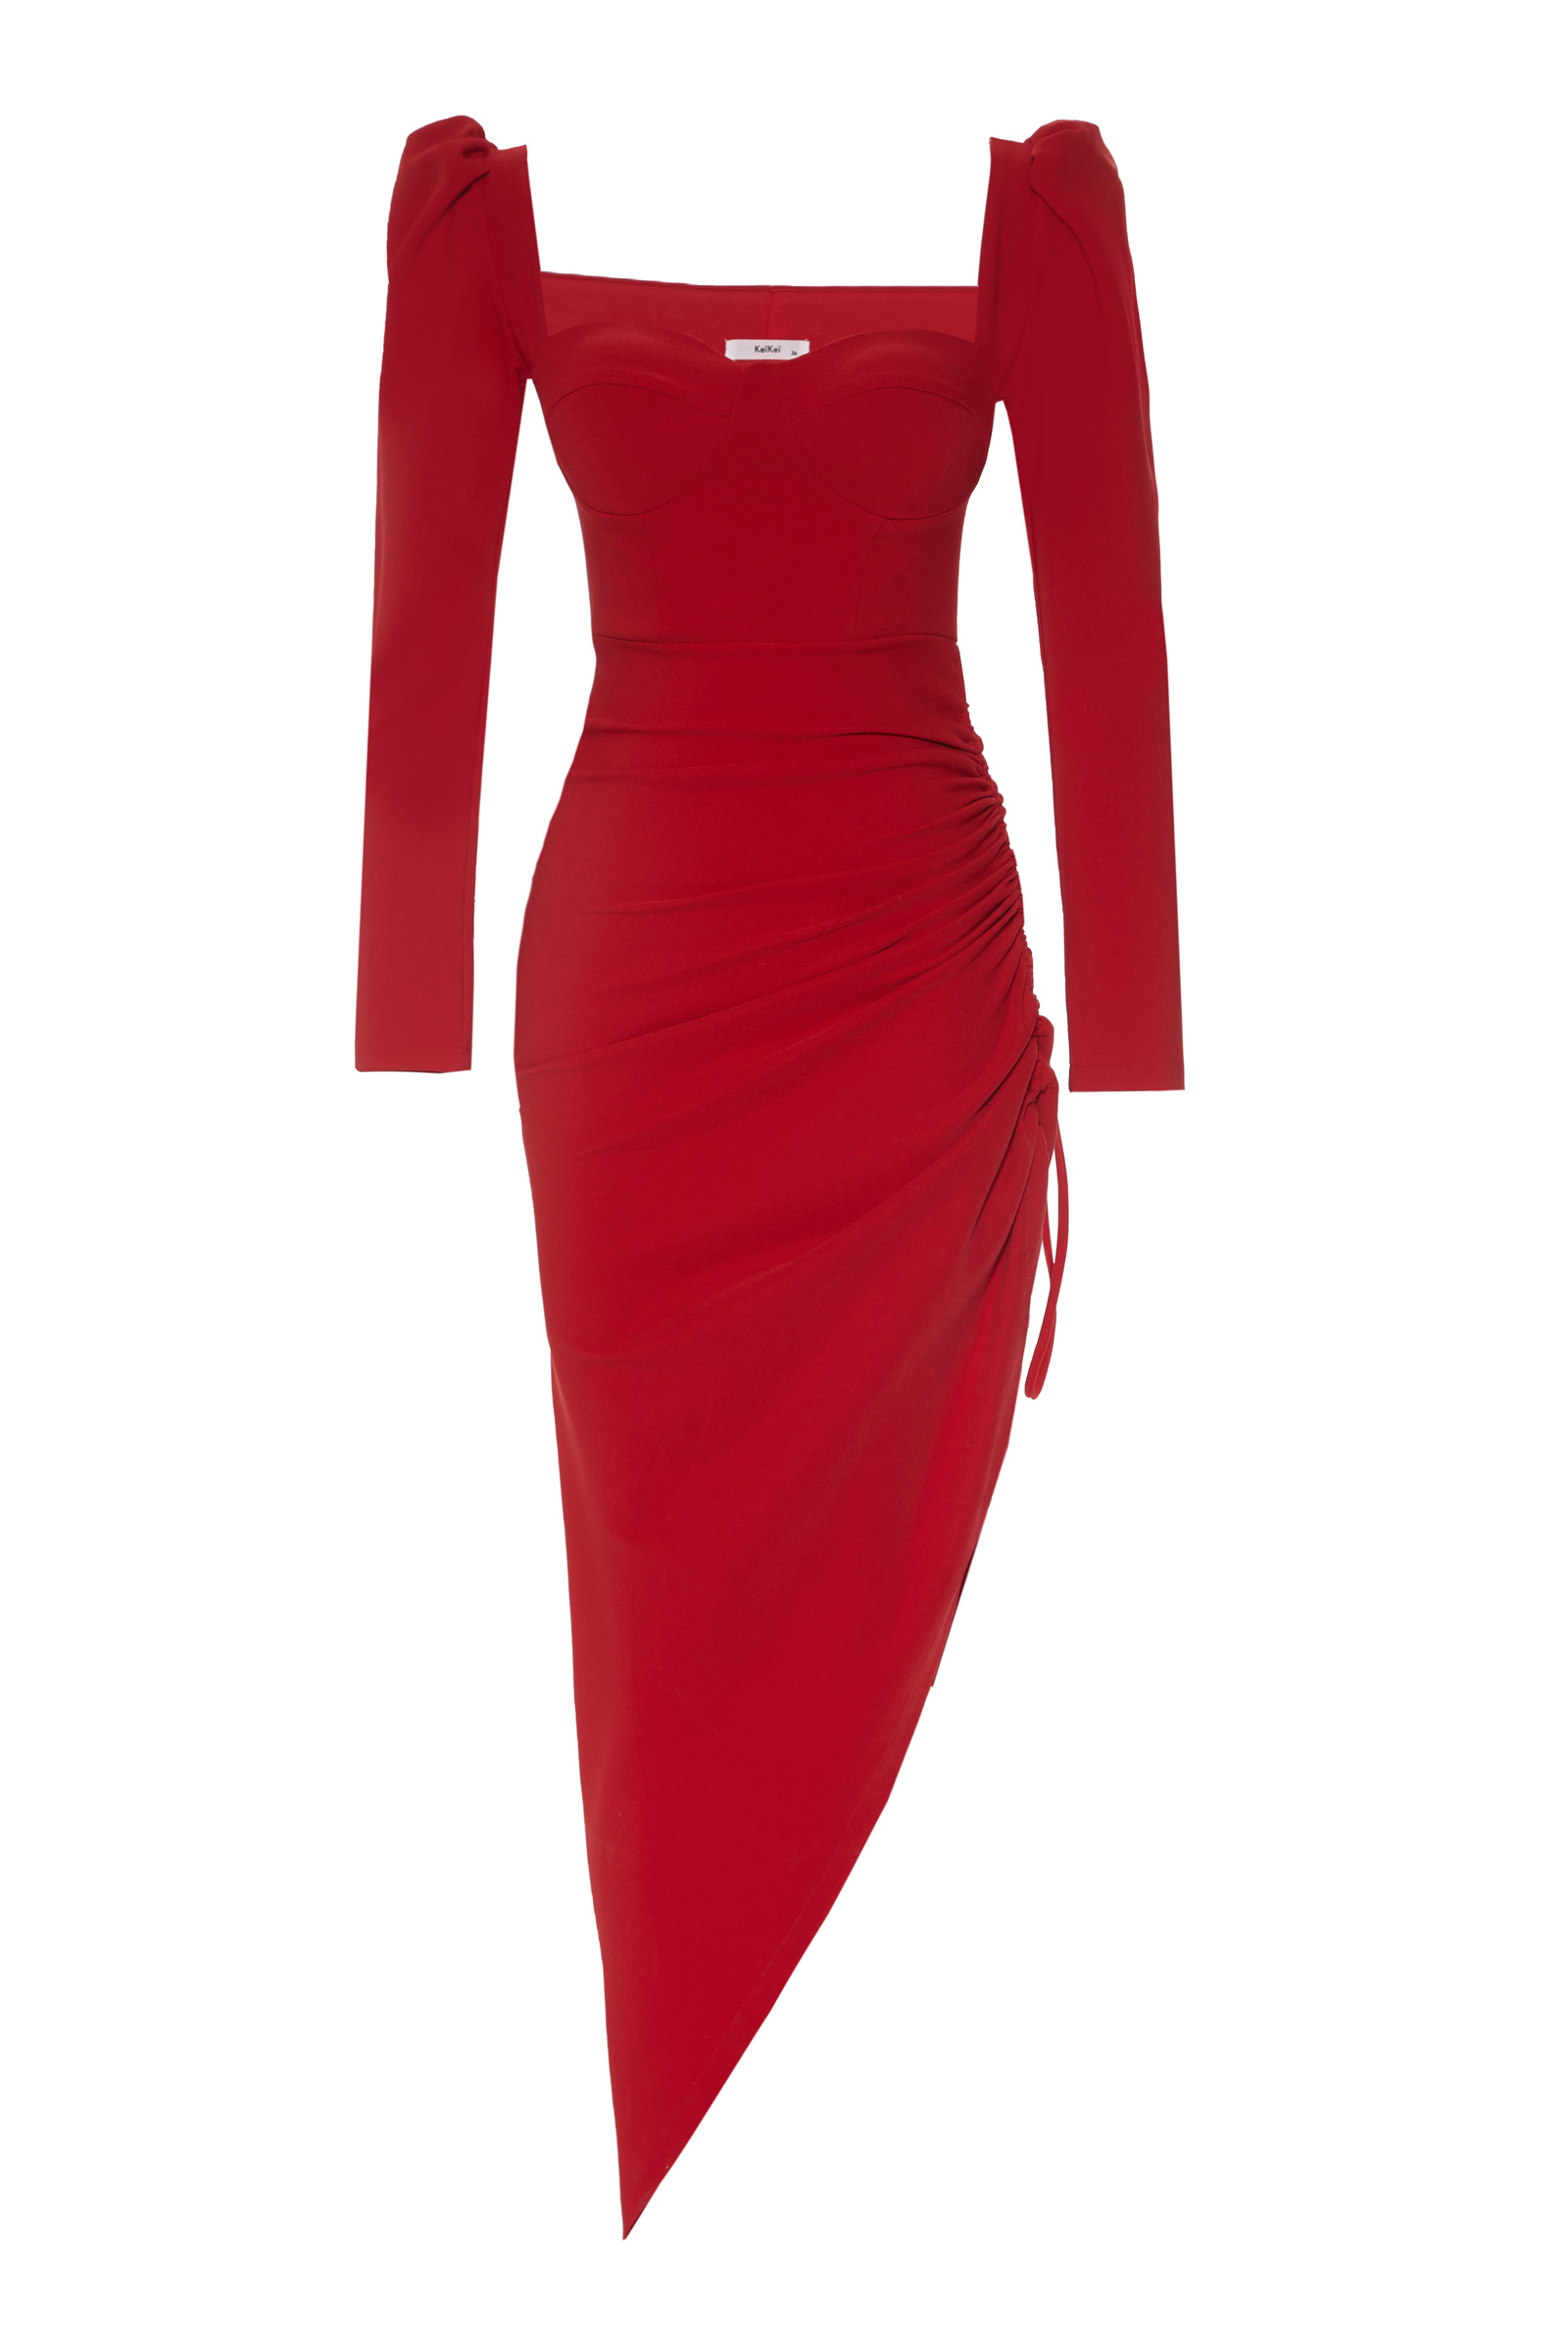 Kırmızı krep uzun kol uzun elbise